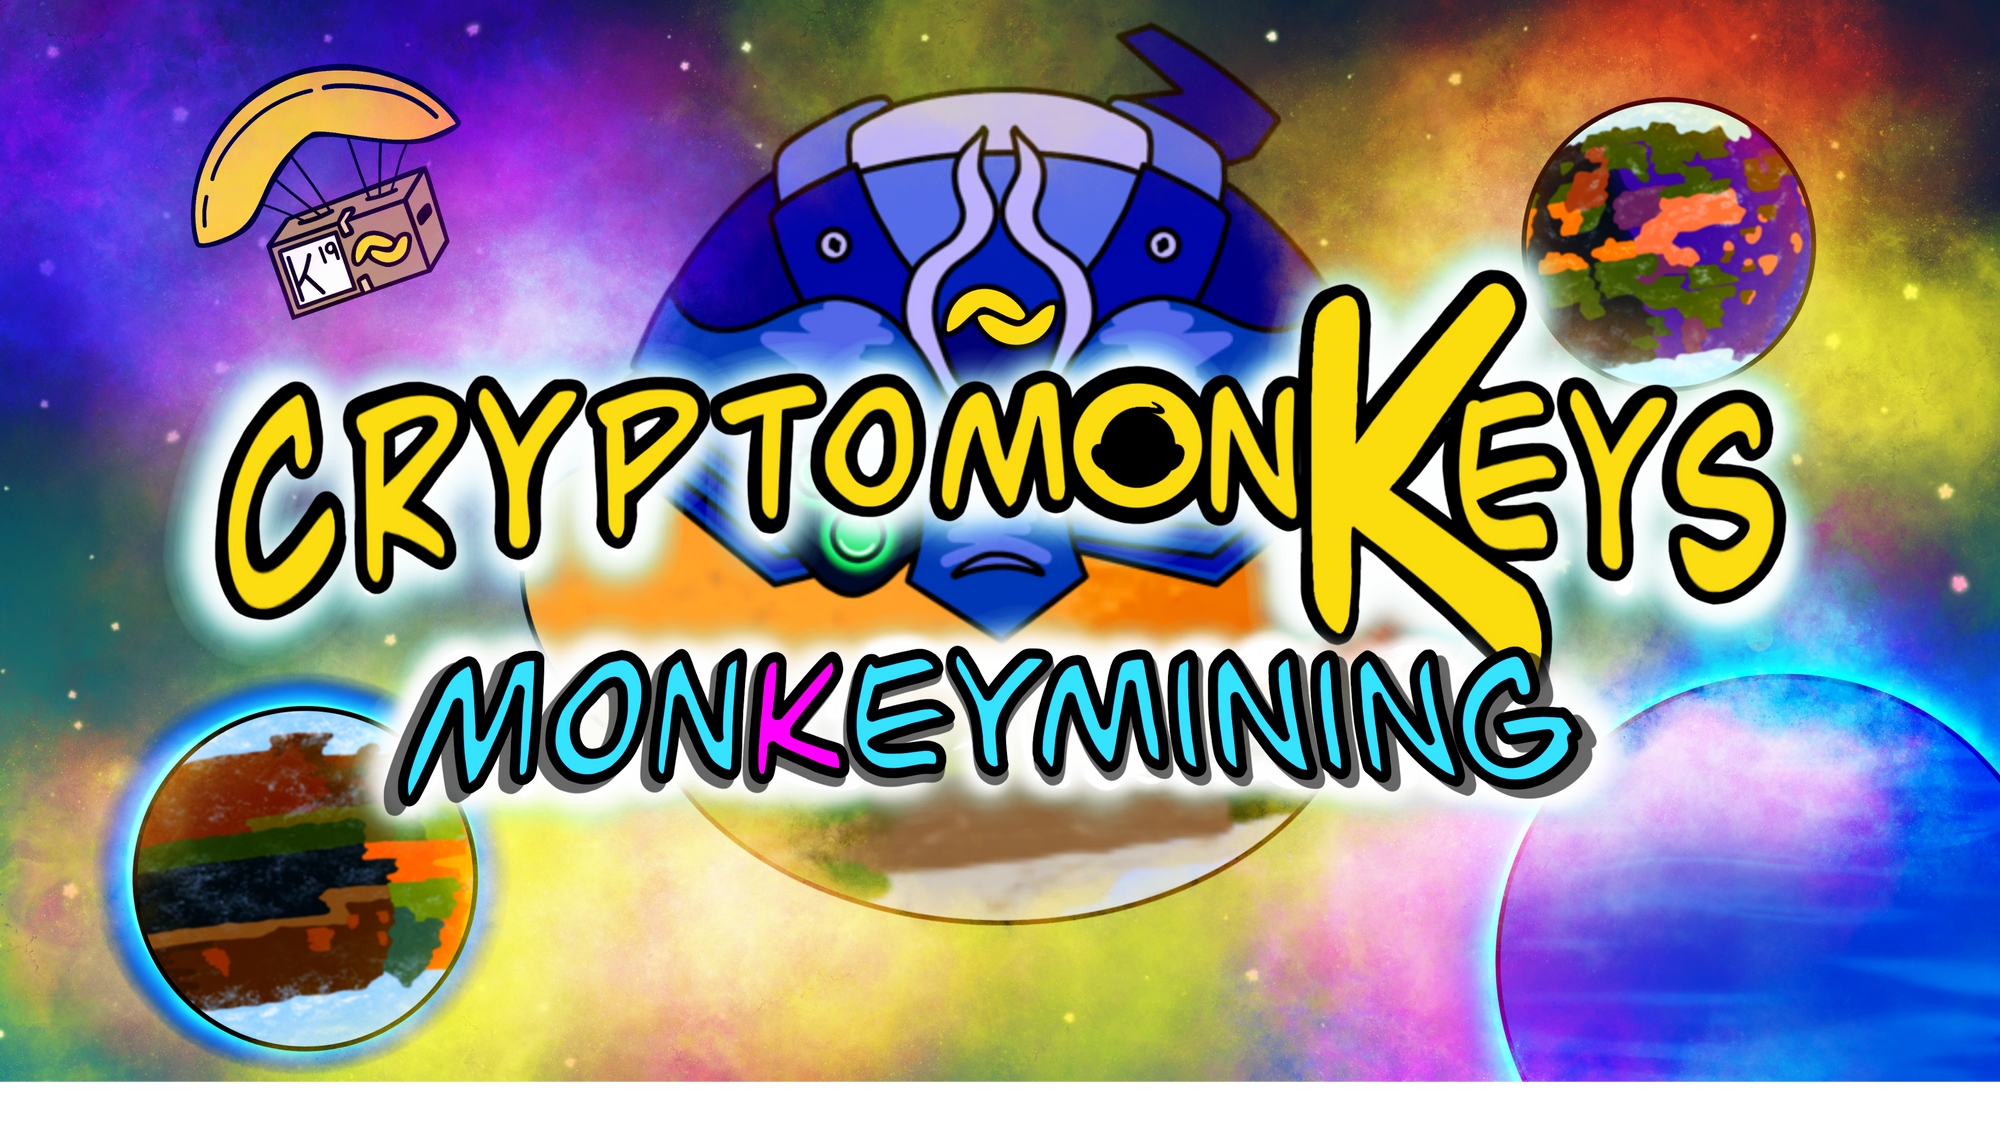 Free BANANO NFTs: cryptomonKeys Update #21: monKeymining Update (Earn NFTs by Playing Alien Worlds!)